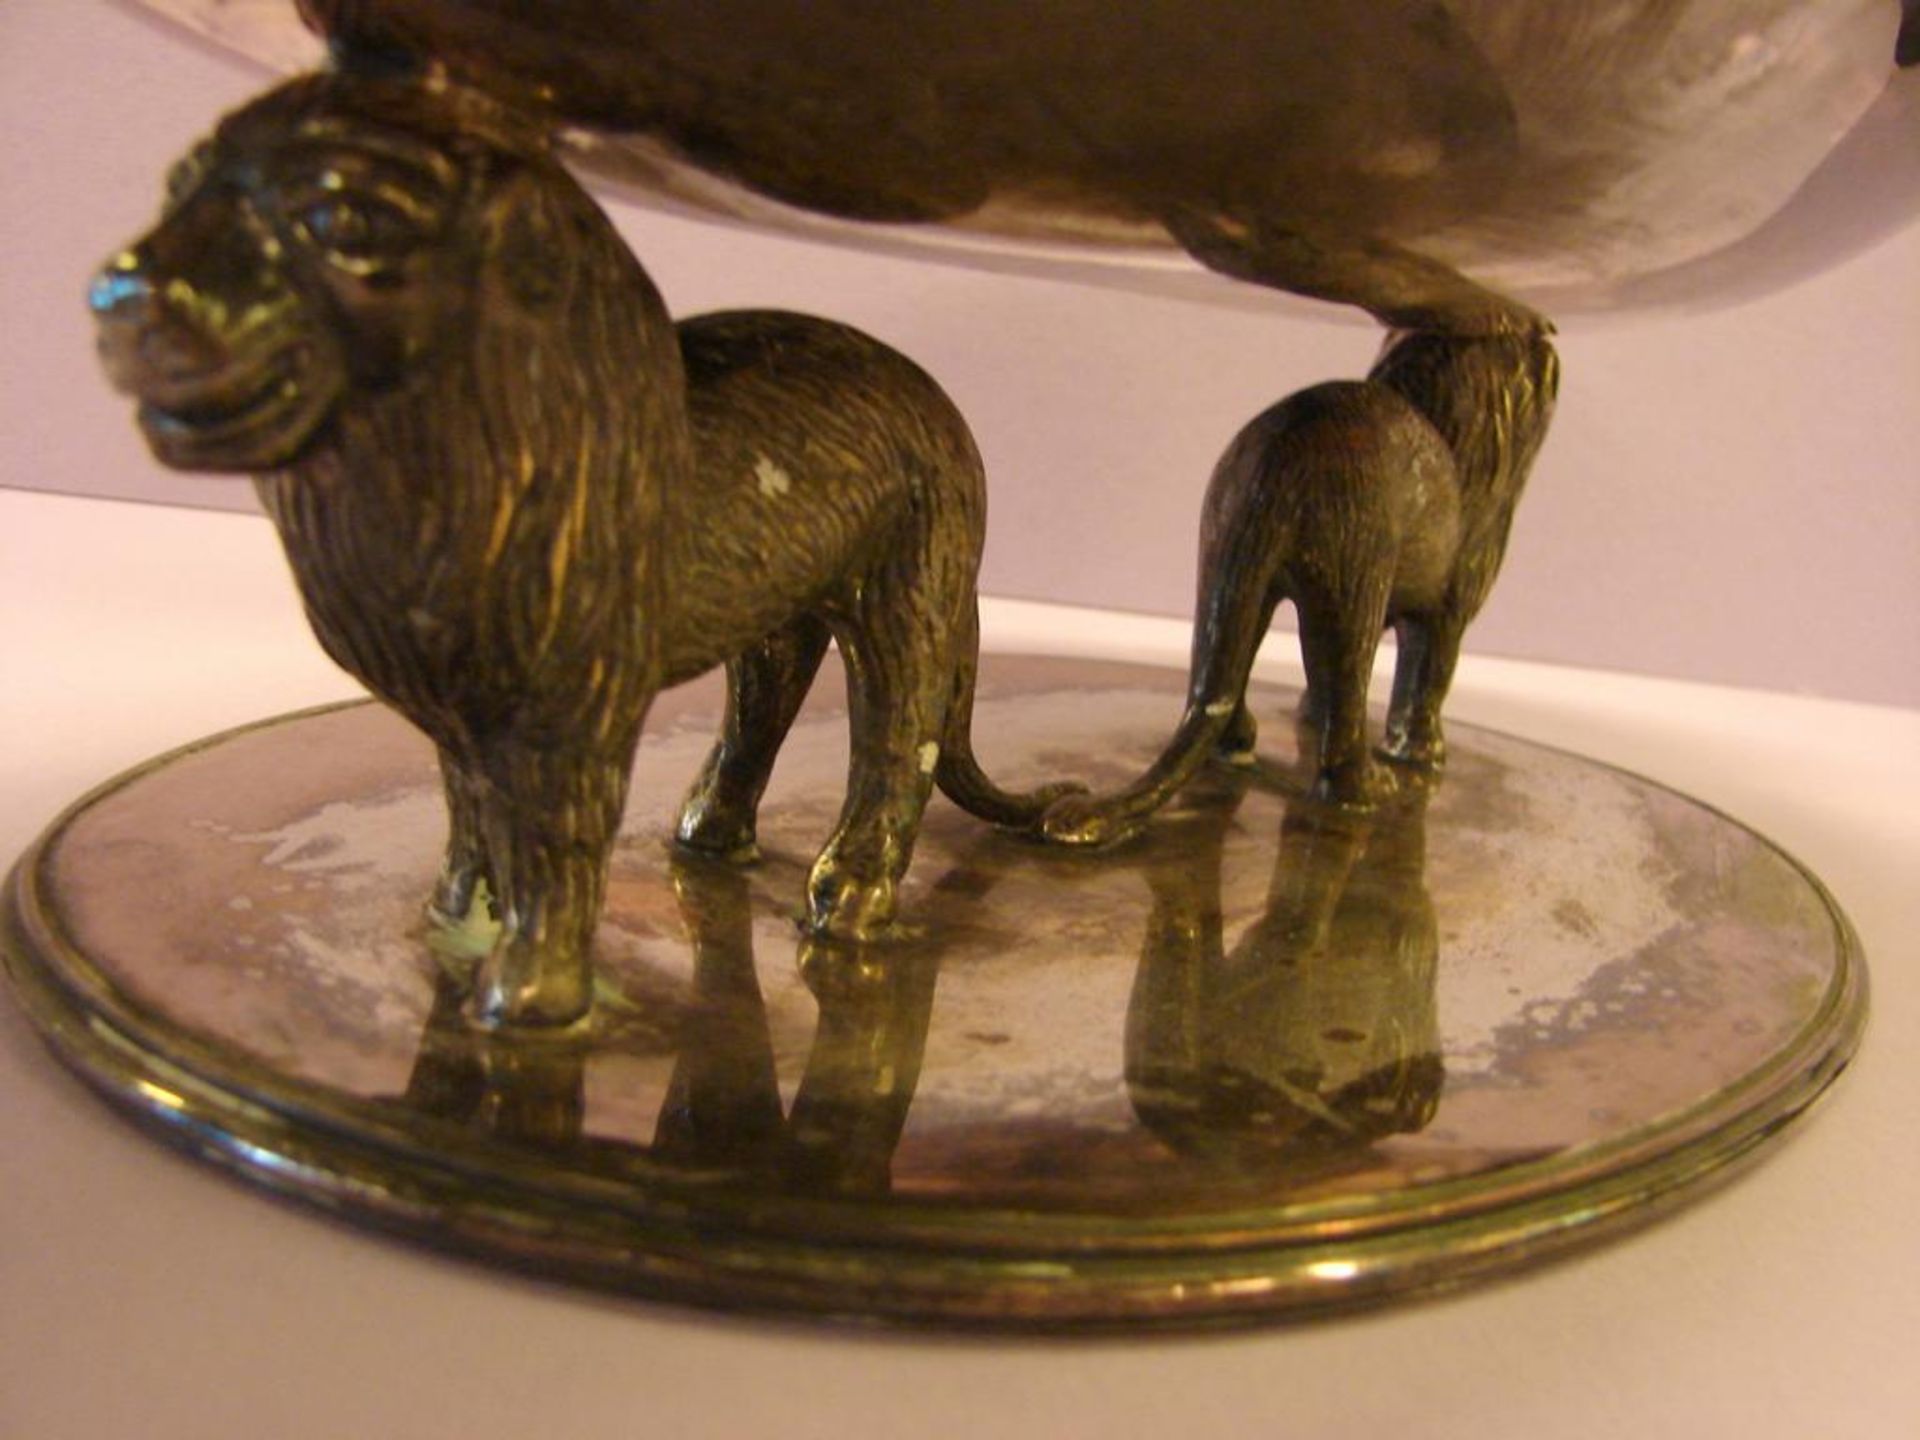 Schale, oval, getragen von 2 Löwen, bez. Valenti, Spanien, B.ca. 36,5, H. 12, T. 21 cm- - -22.00 % - Bild 2 aus 2